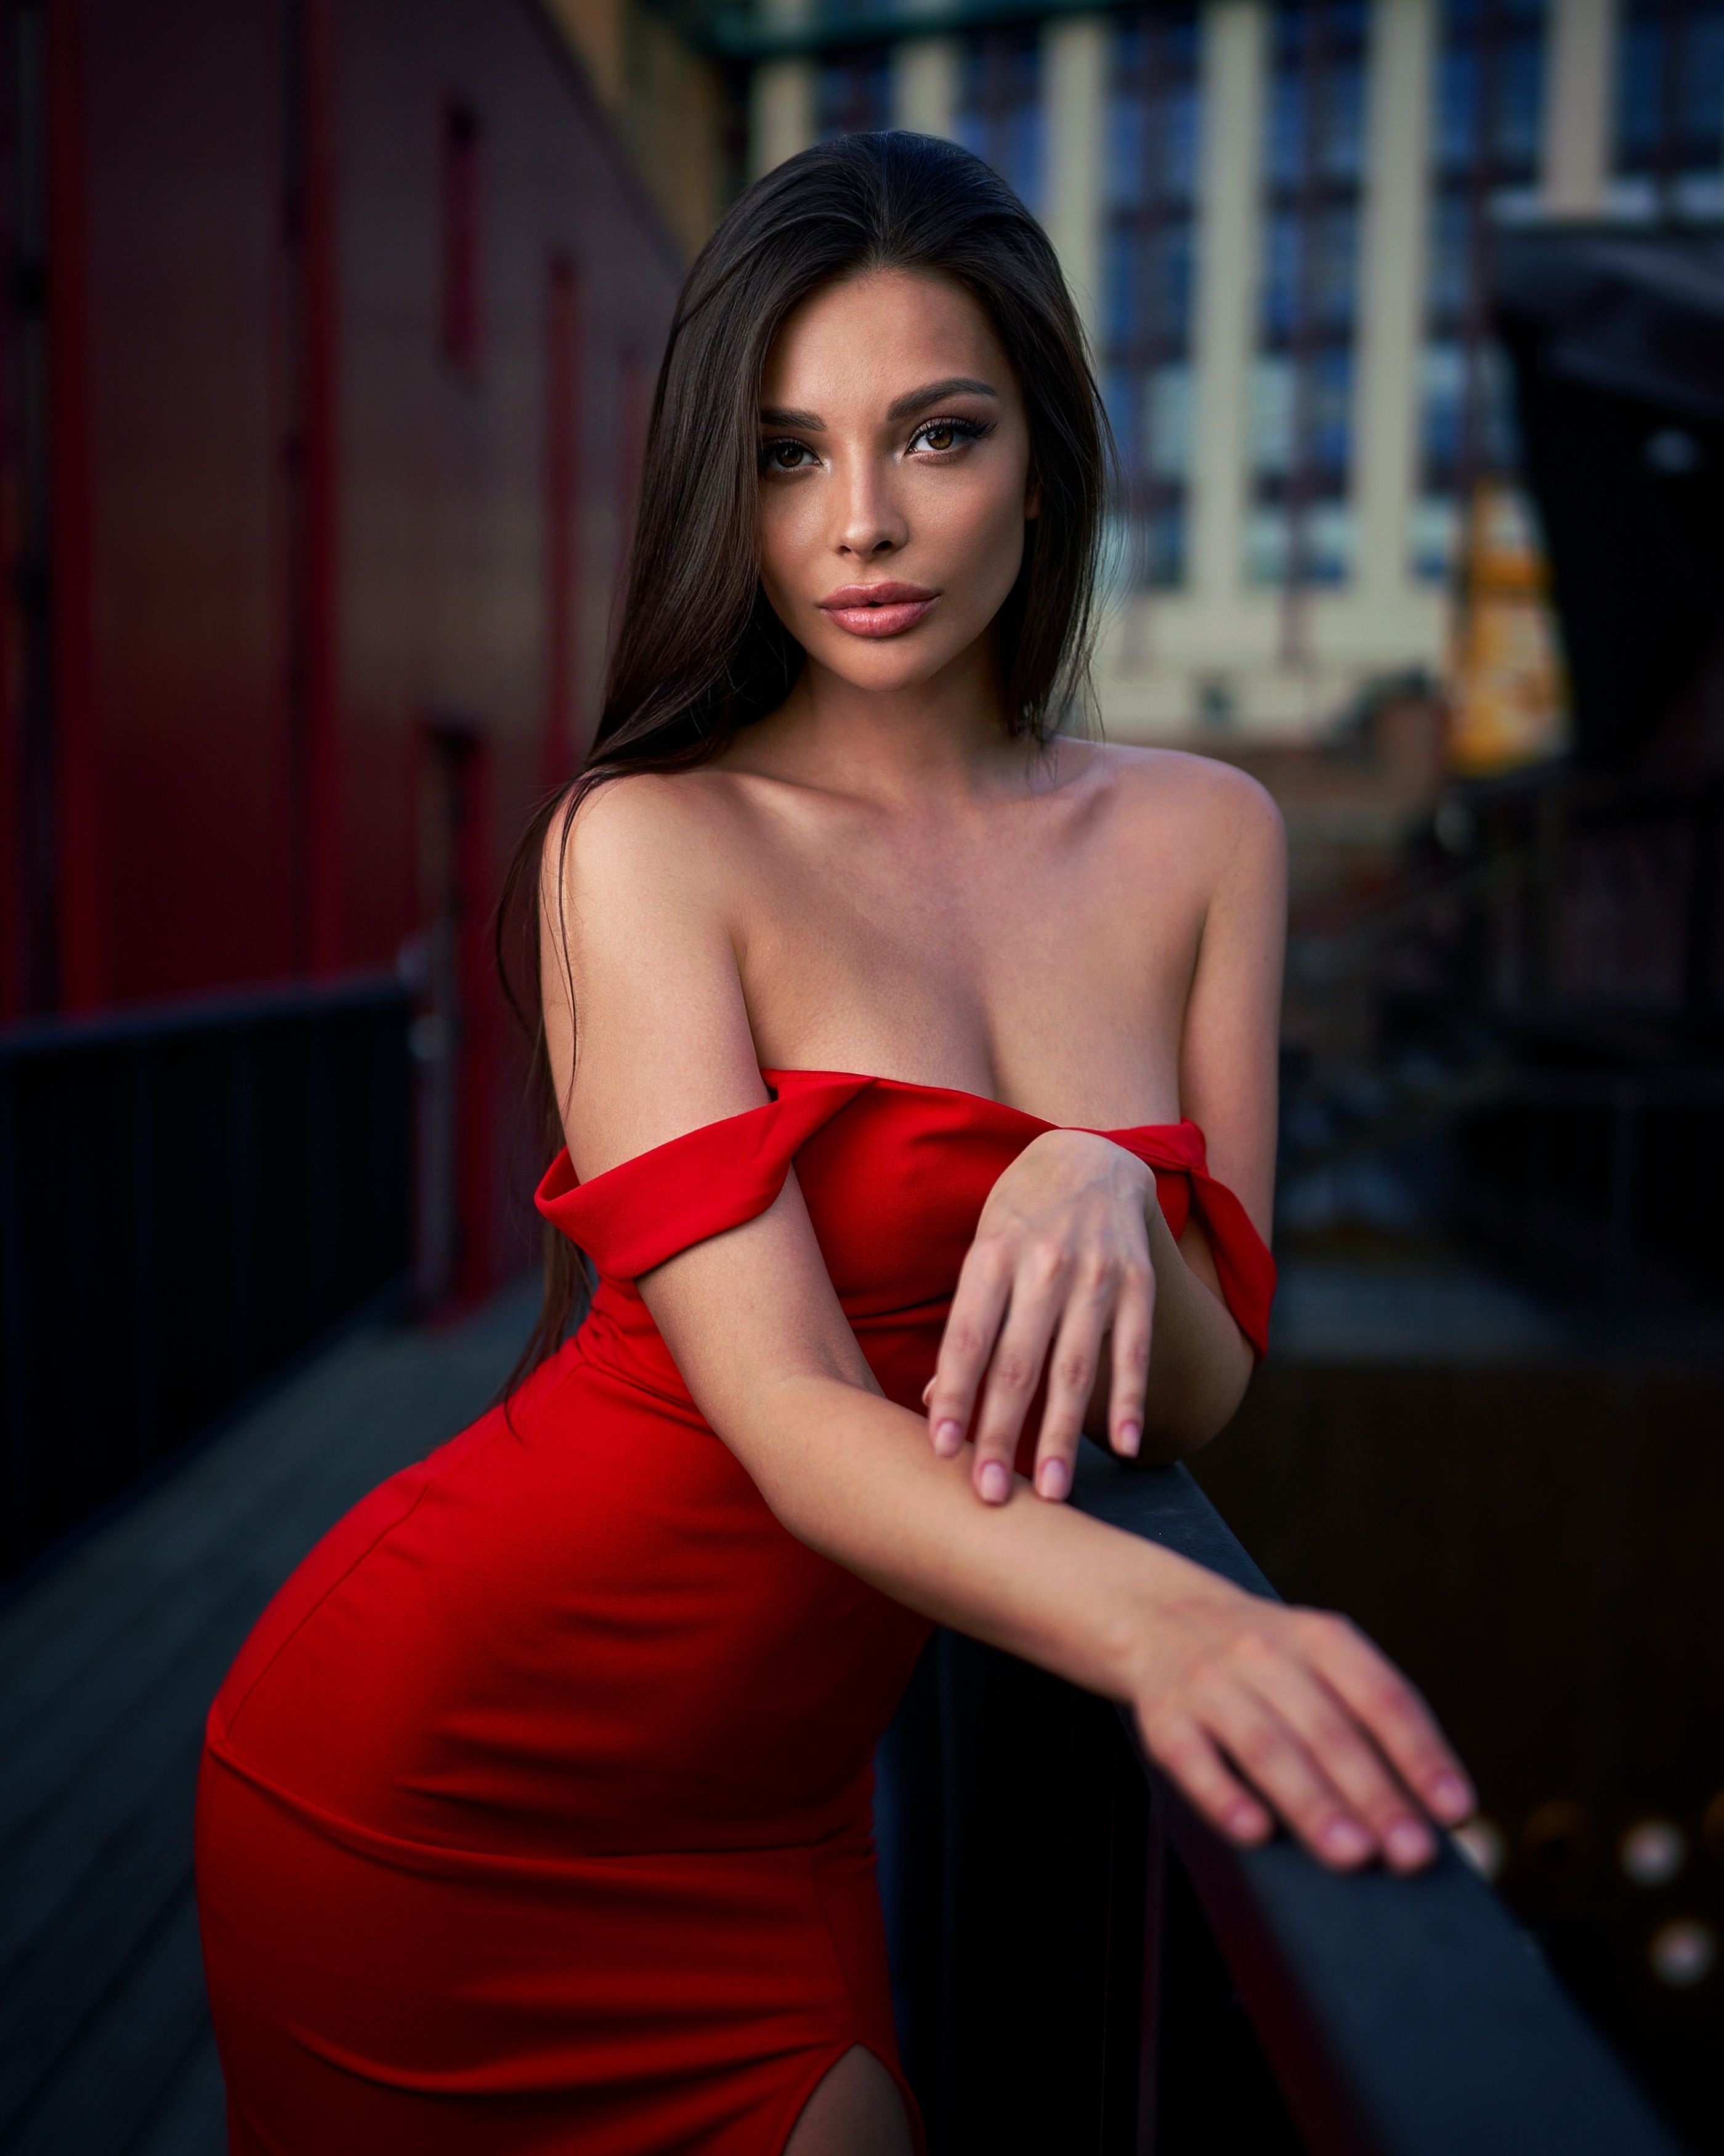 модель, девушка, portrait, girl, sonya7iv, 35mm14, Сергей Чурносов